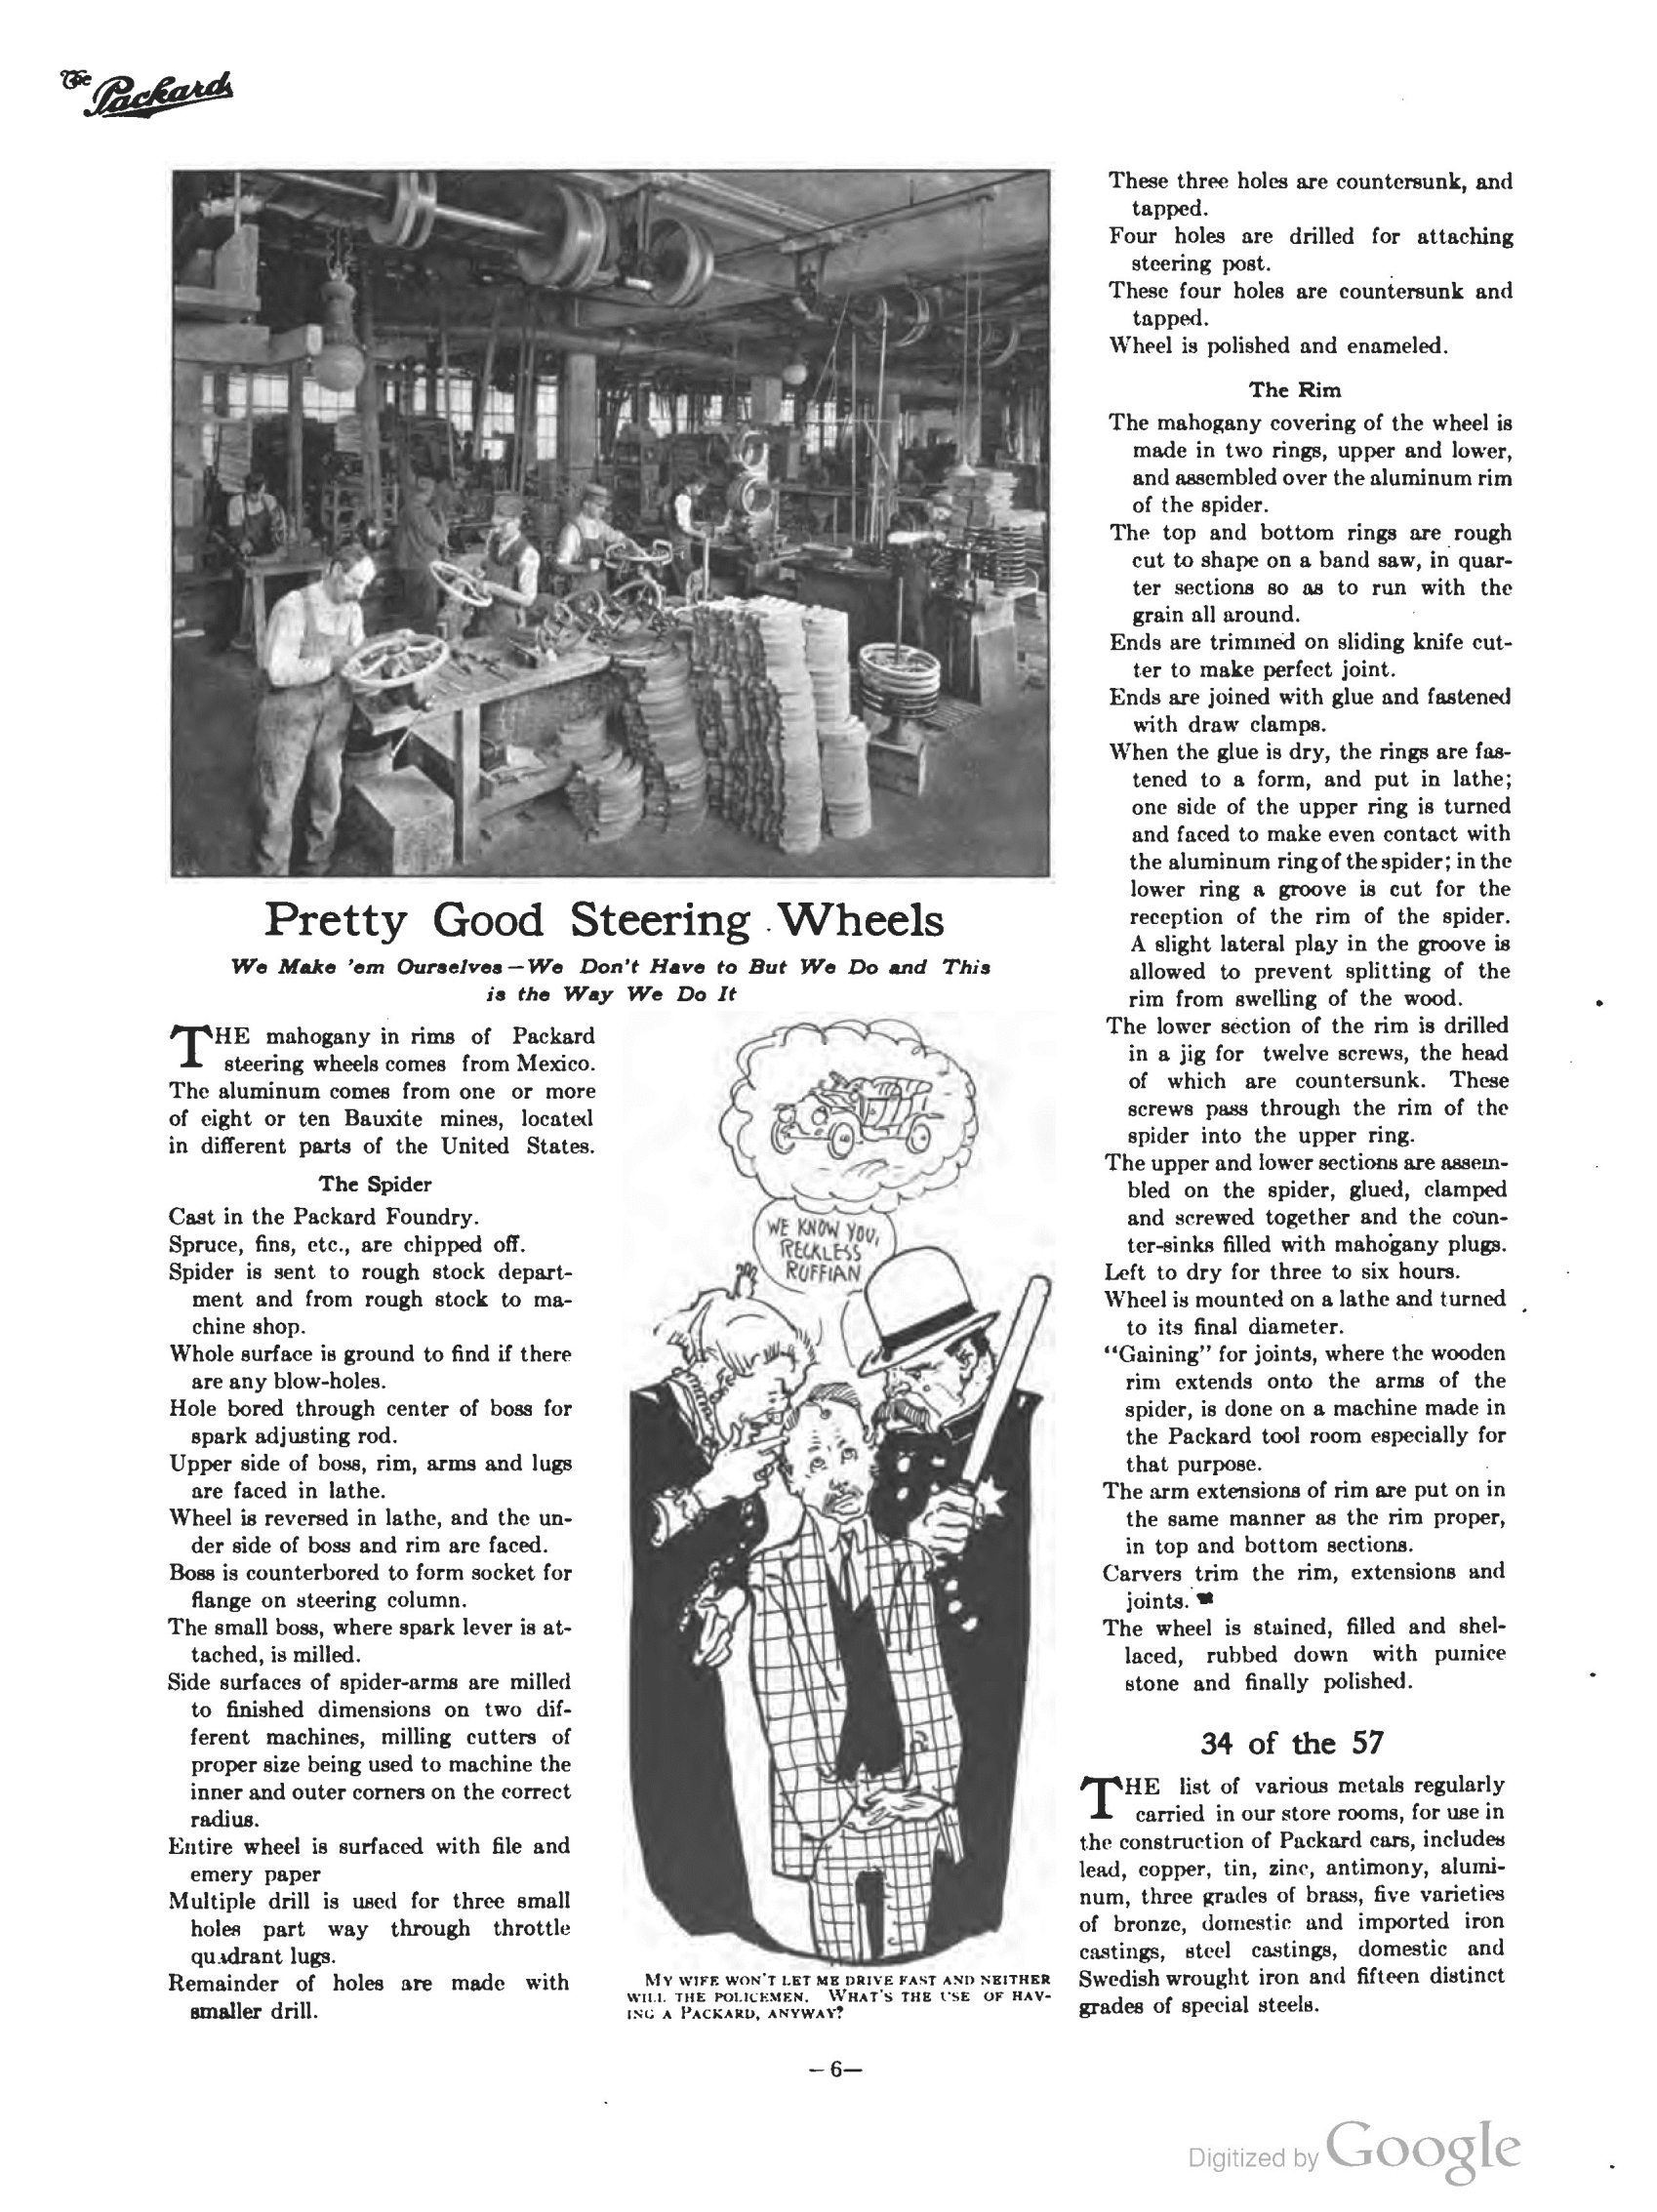 1910_The_Packard_Newsletter-040